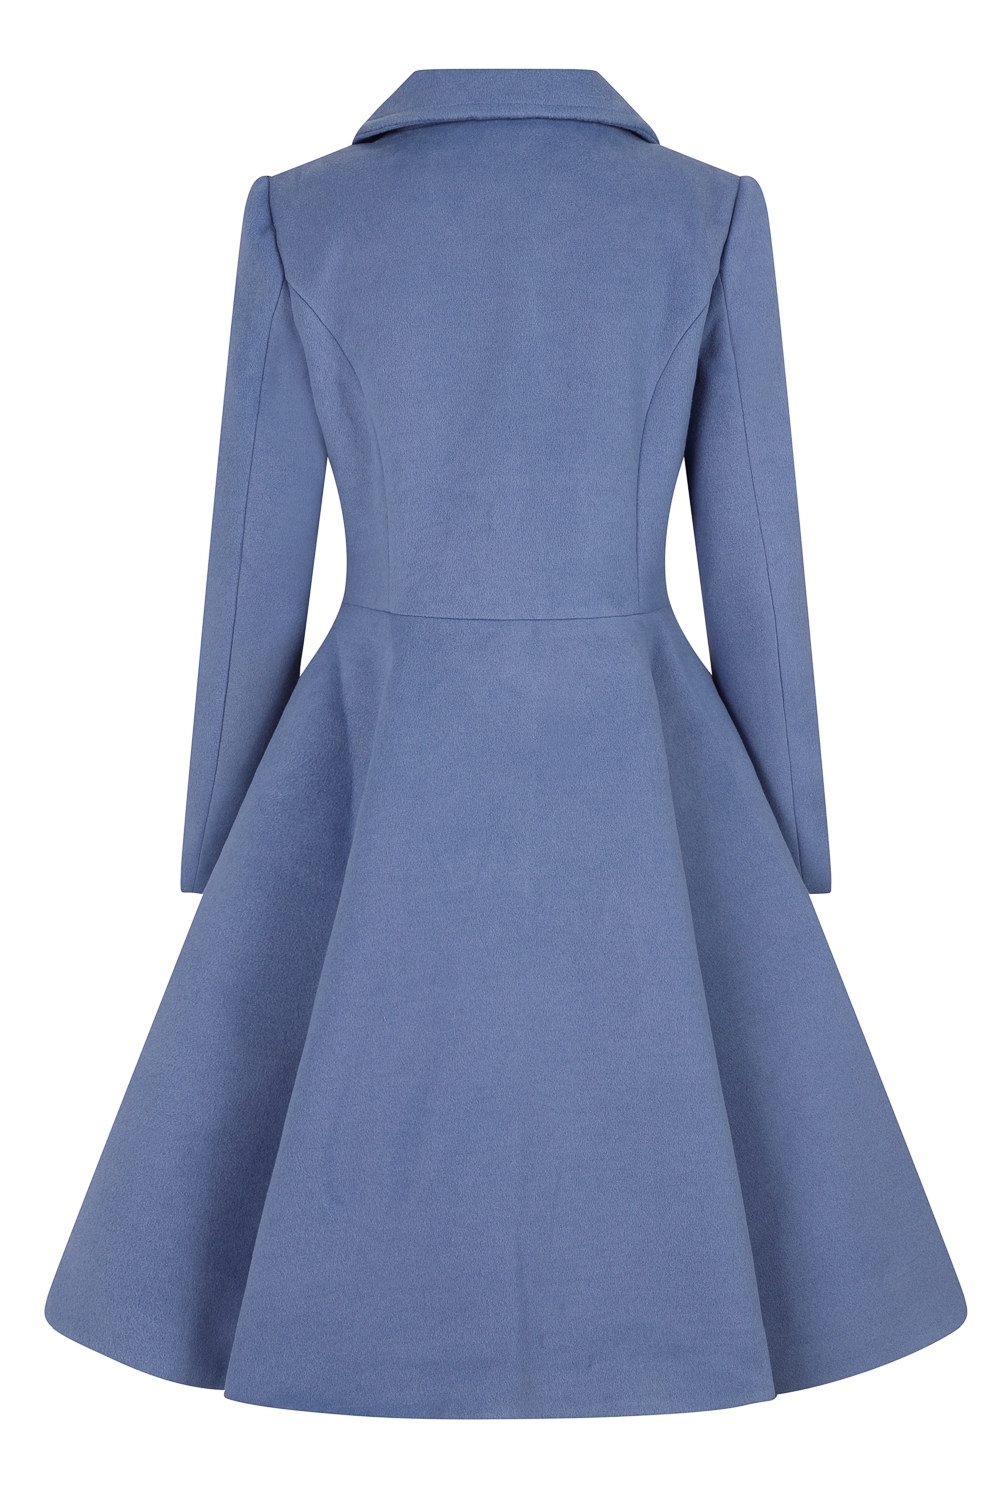 Fahrenheit assistent spiralformet Frakke: Esme - skøn vintageinspireret frakke i lyseblå med sød krave